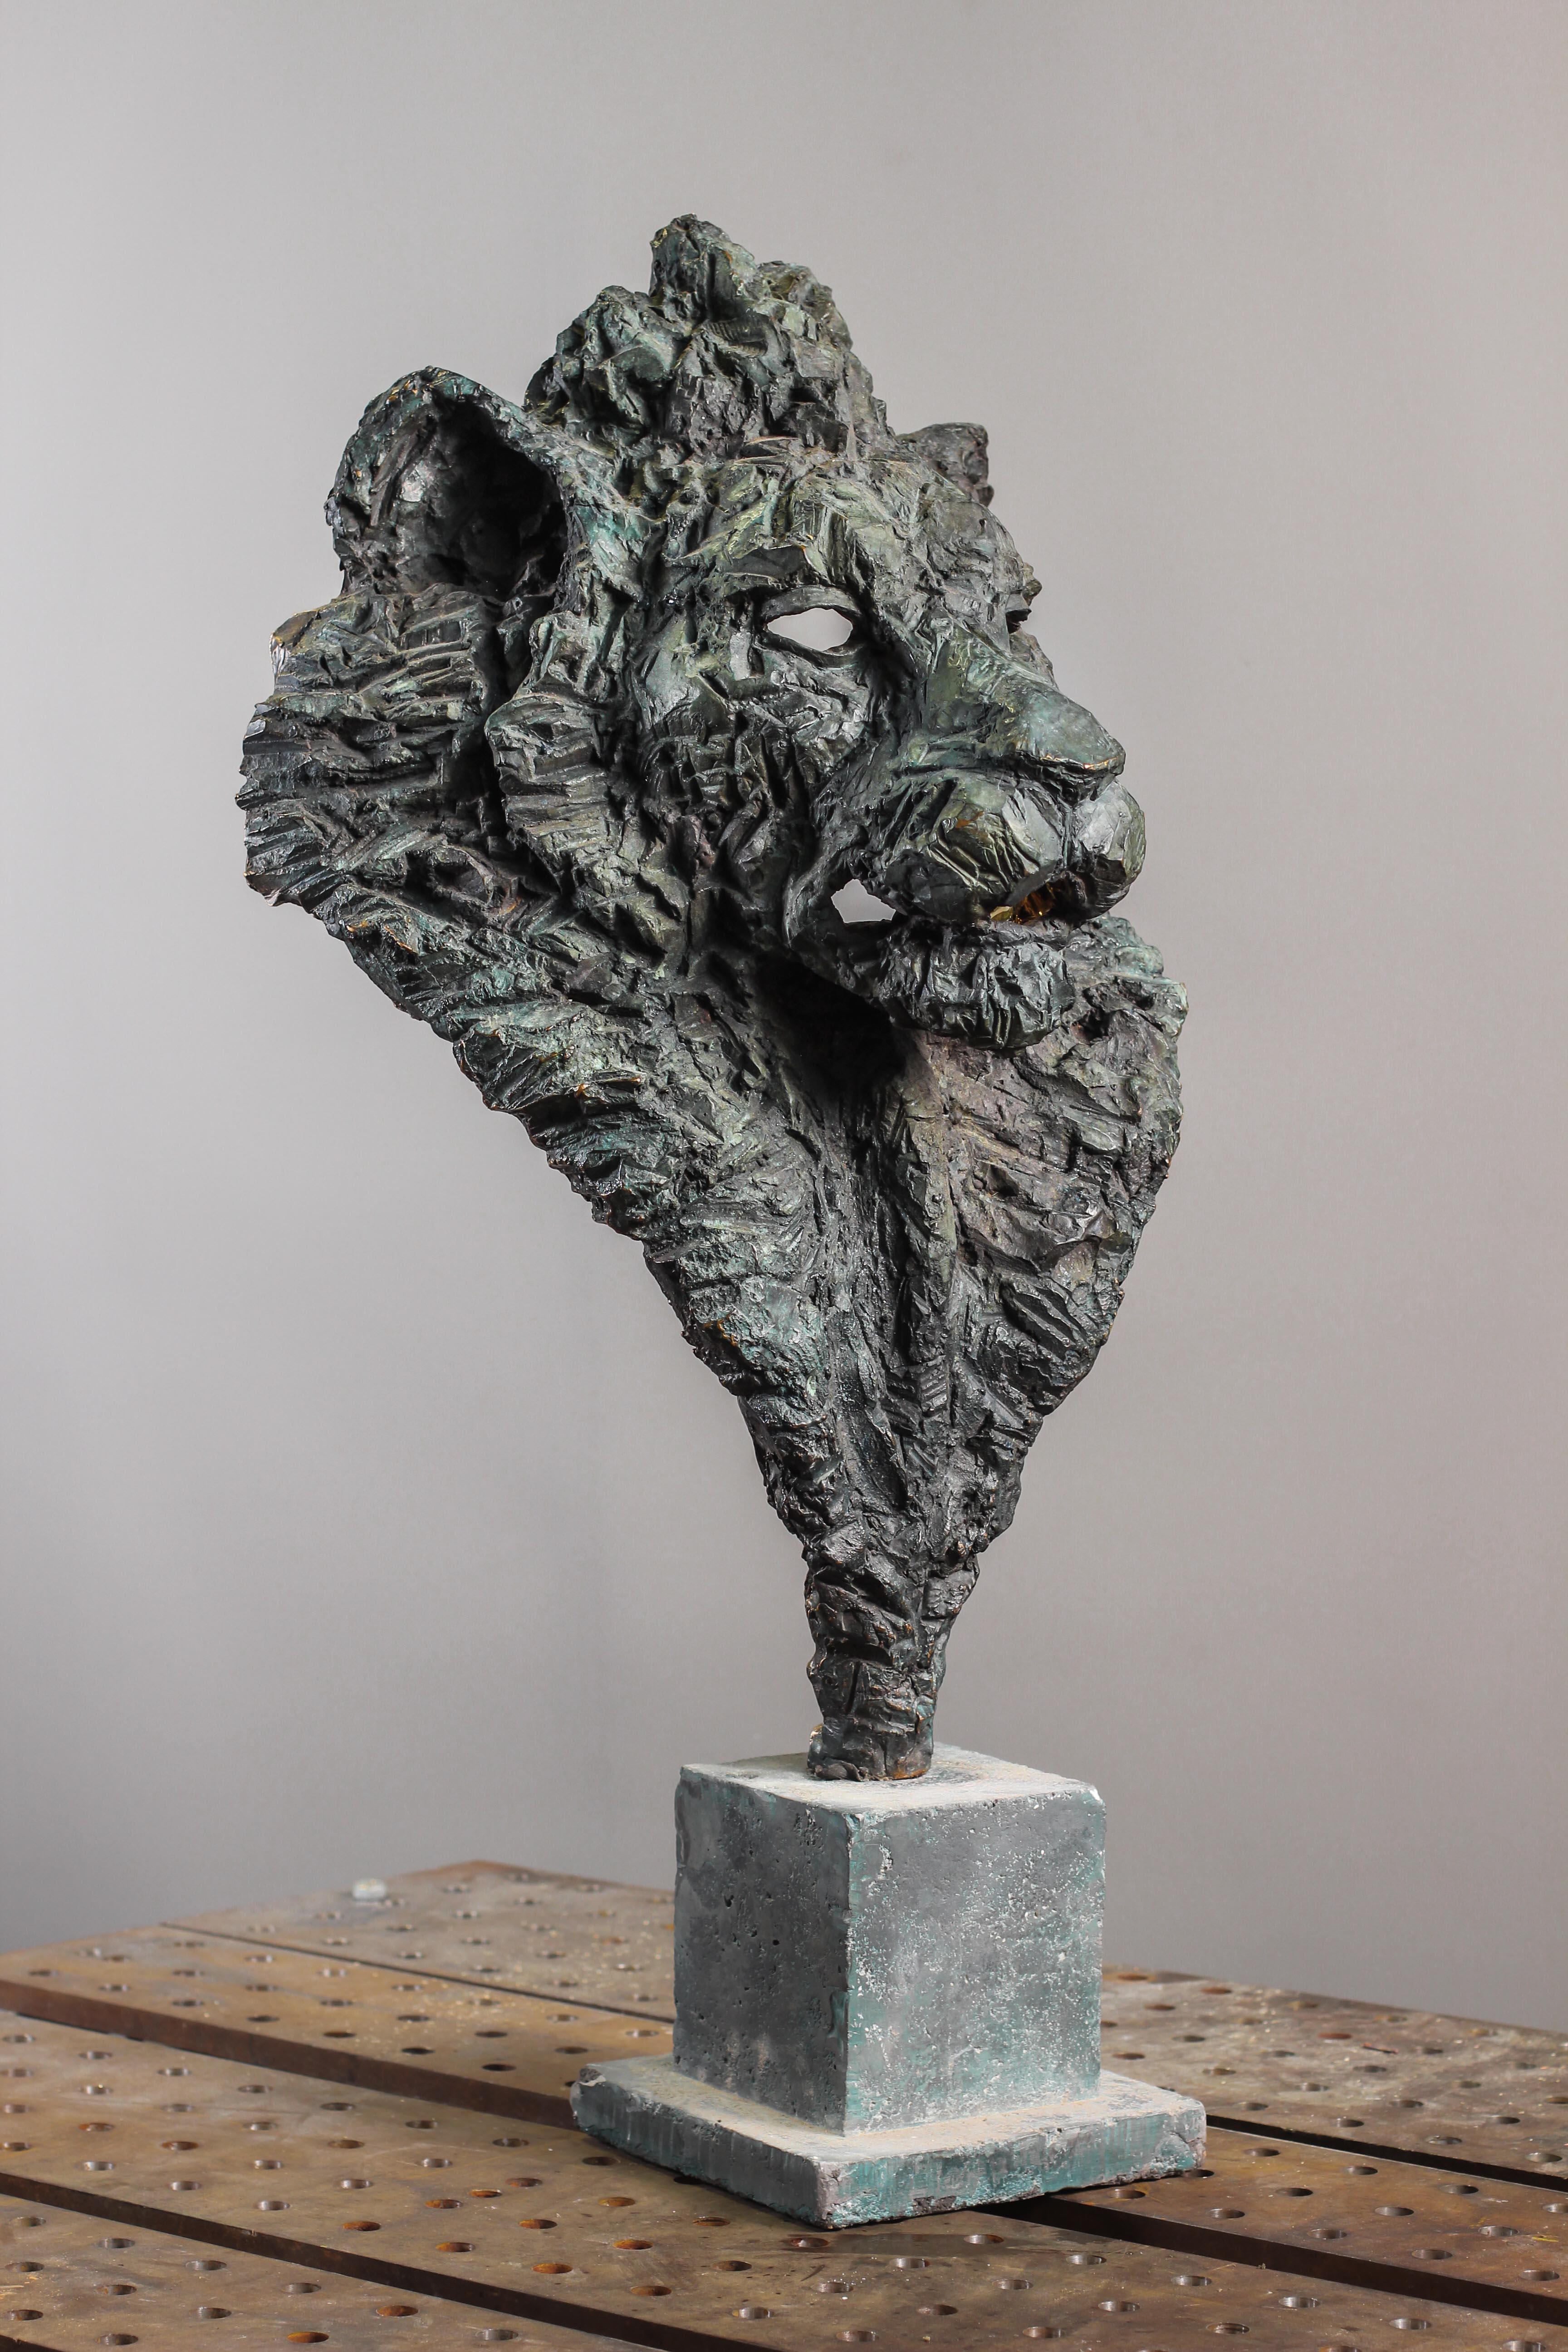 Né en 1996, Thomas Waroquier vit et travaille à Paris. Il obtient son diplôme de sculpture sur métal avec les félicitations du jury en 2017 à l'École nationale supérieure des arts appliqués et des métiers d'art Olivier de Serres où il apprend la